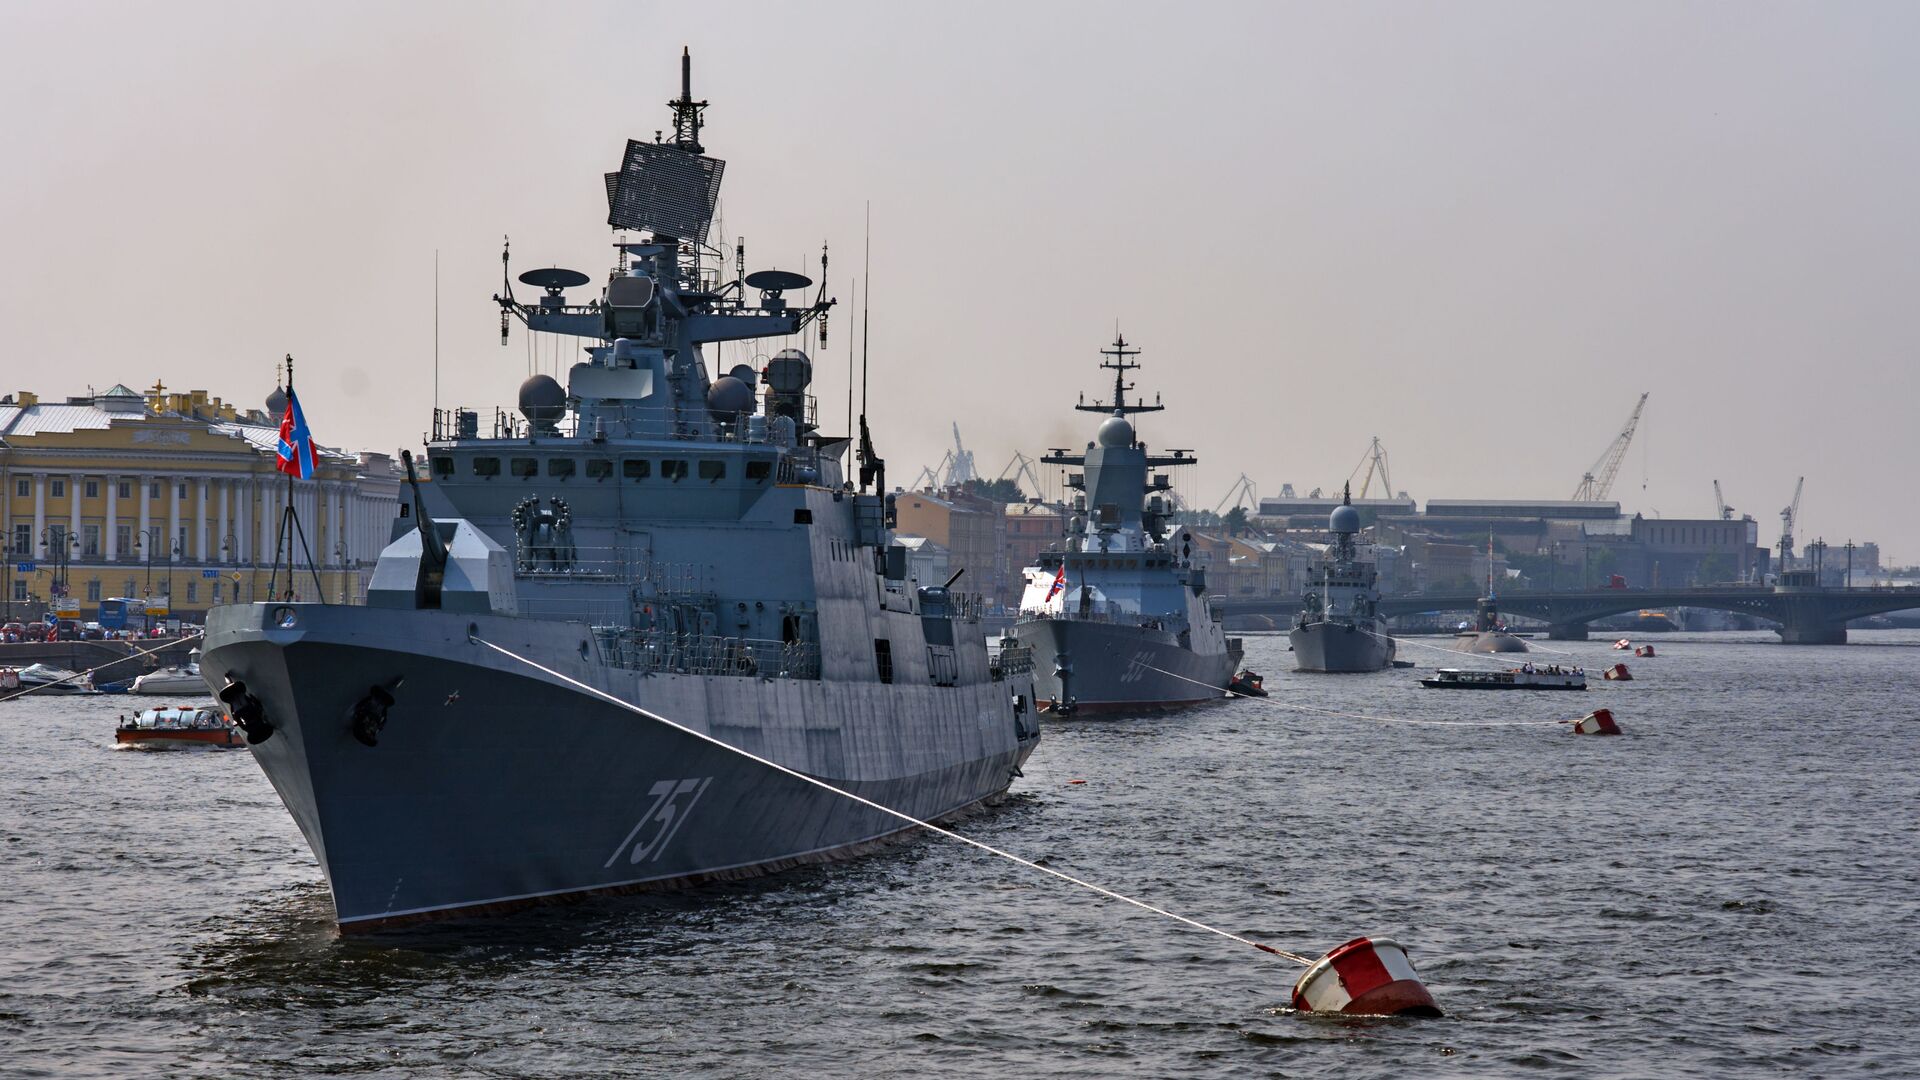 Chiến hạm tuần tra Đô đốc Essen (dẫn đầu) trong vùng nước sông Neva, chuẩn bị để 31 tháng Bảy tham gia cuộc diễu hành kỷ niệm Ngày Hải quân Nga.  - Sputnik Việt Nam, 1920, 22.04.2022